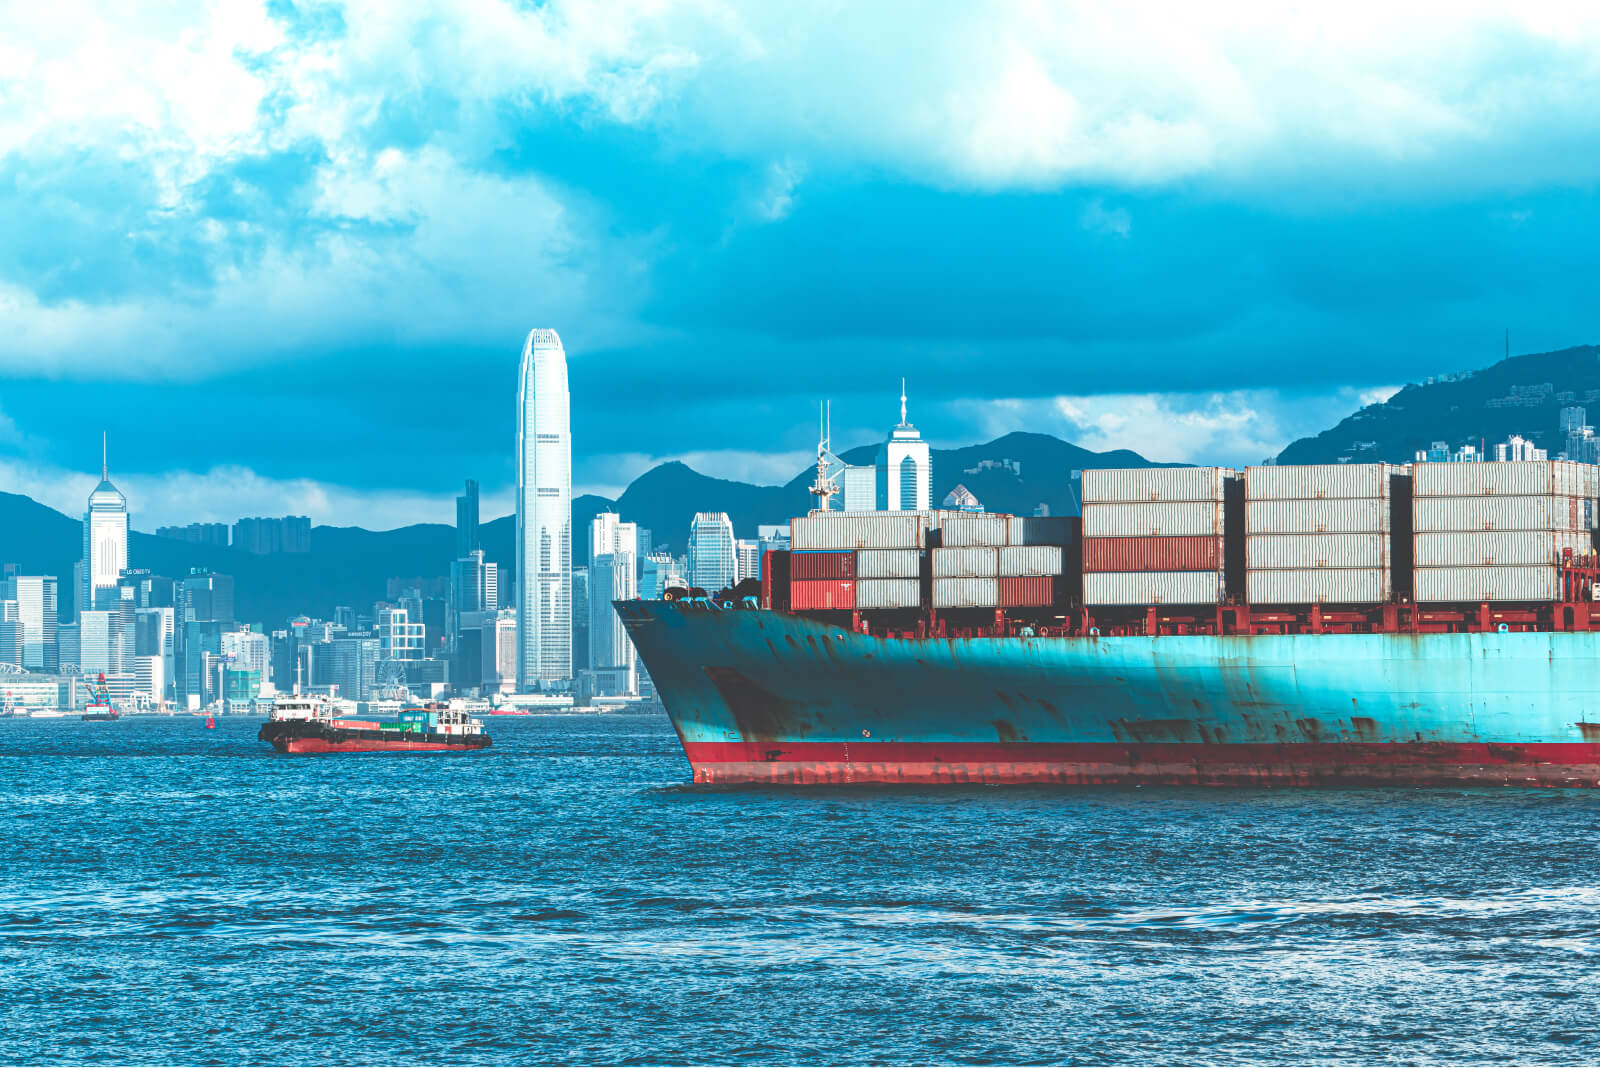 Ocean cargo ship entering a major shipping port